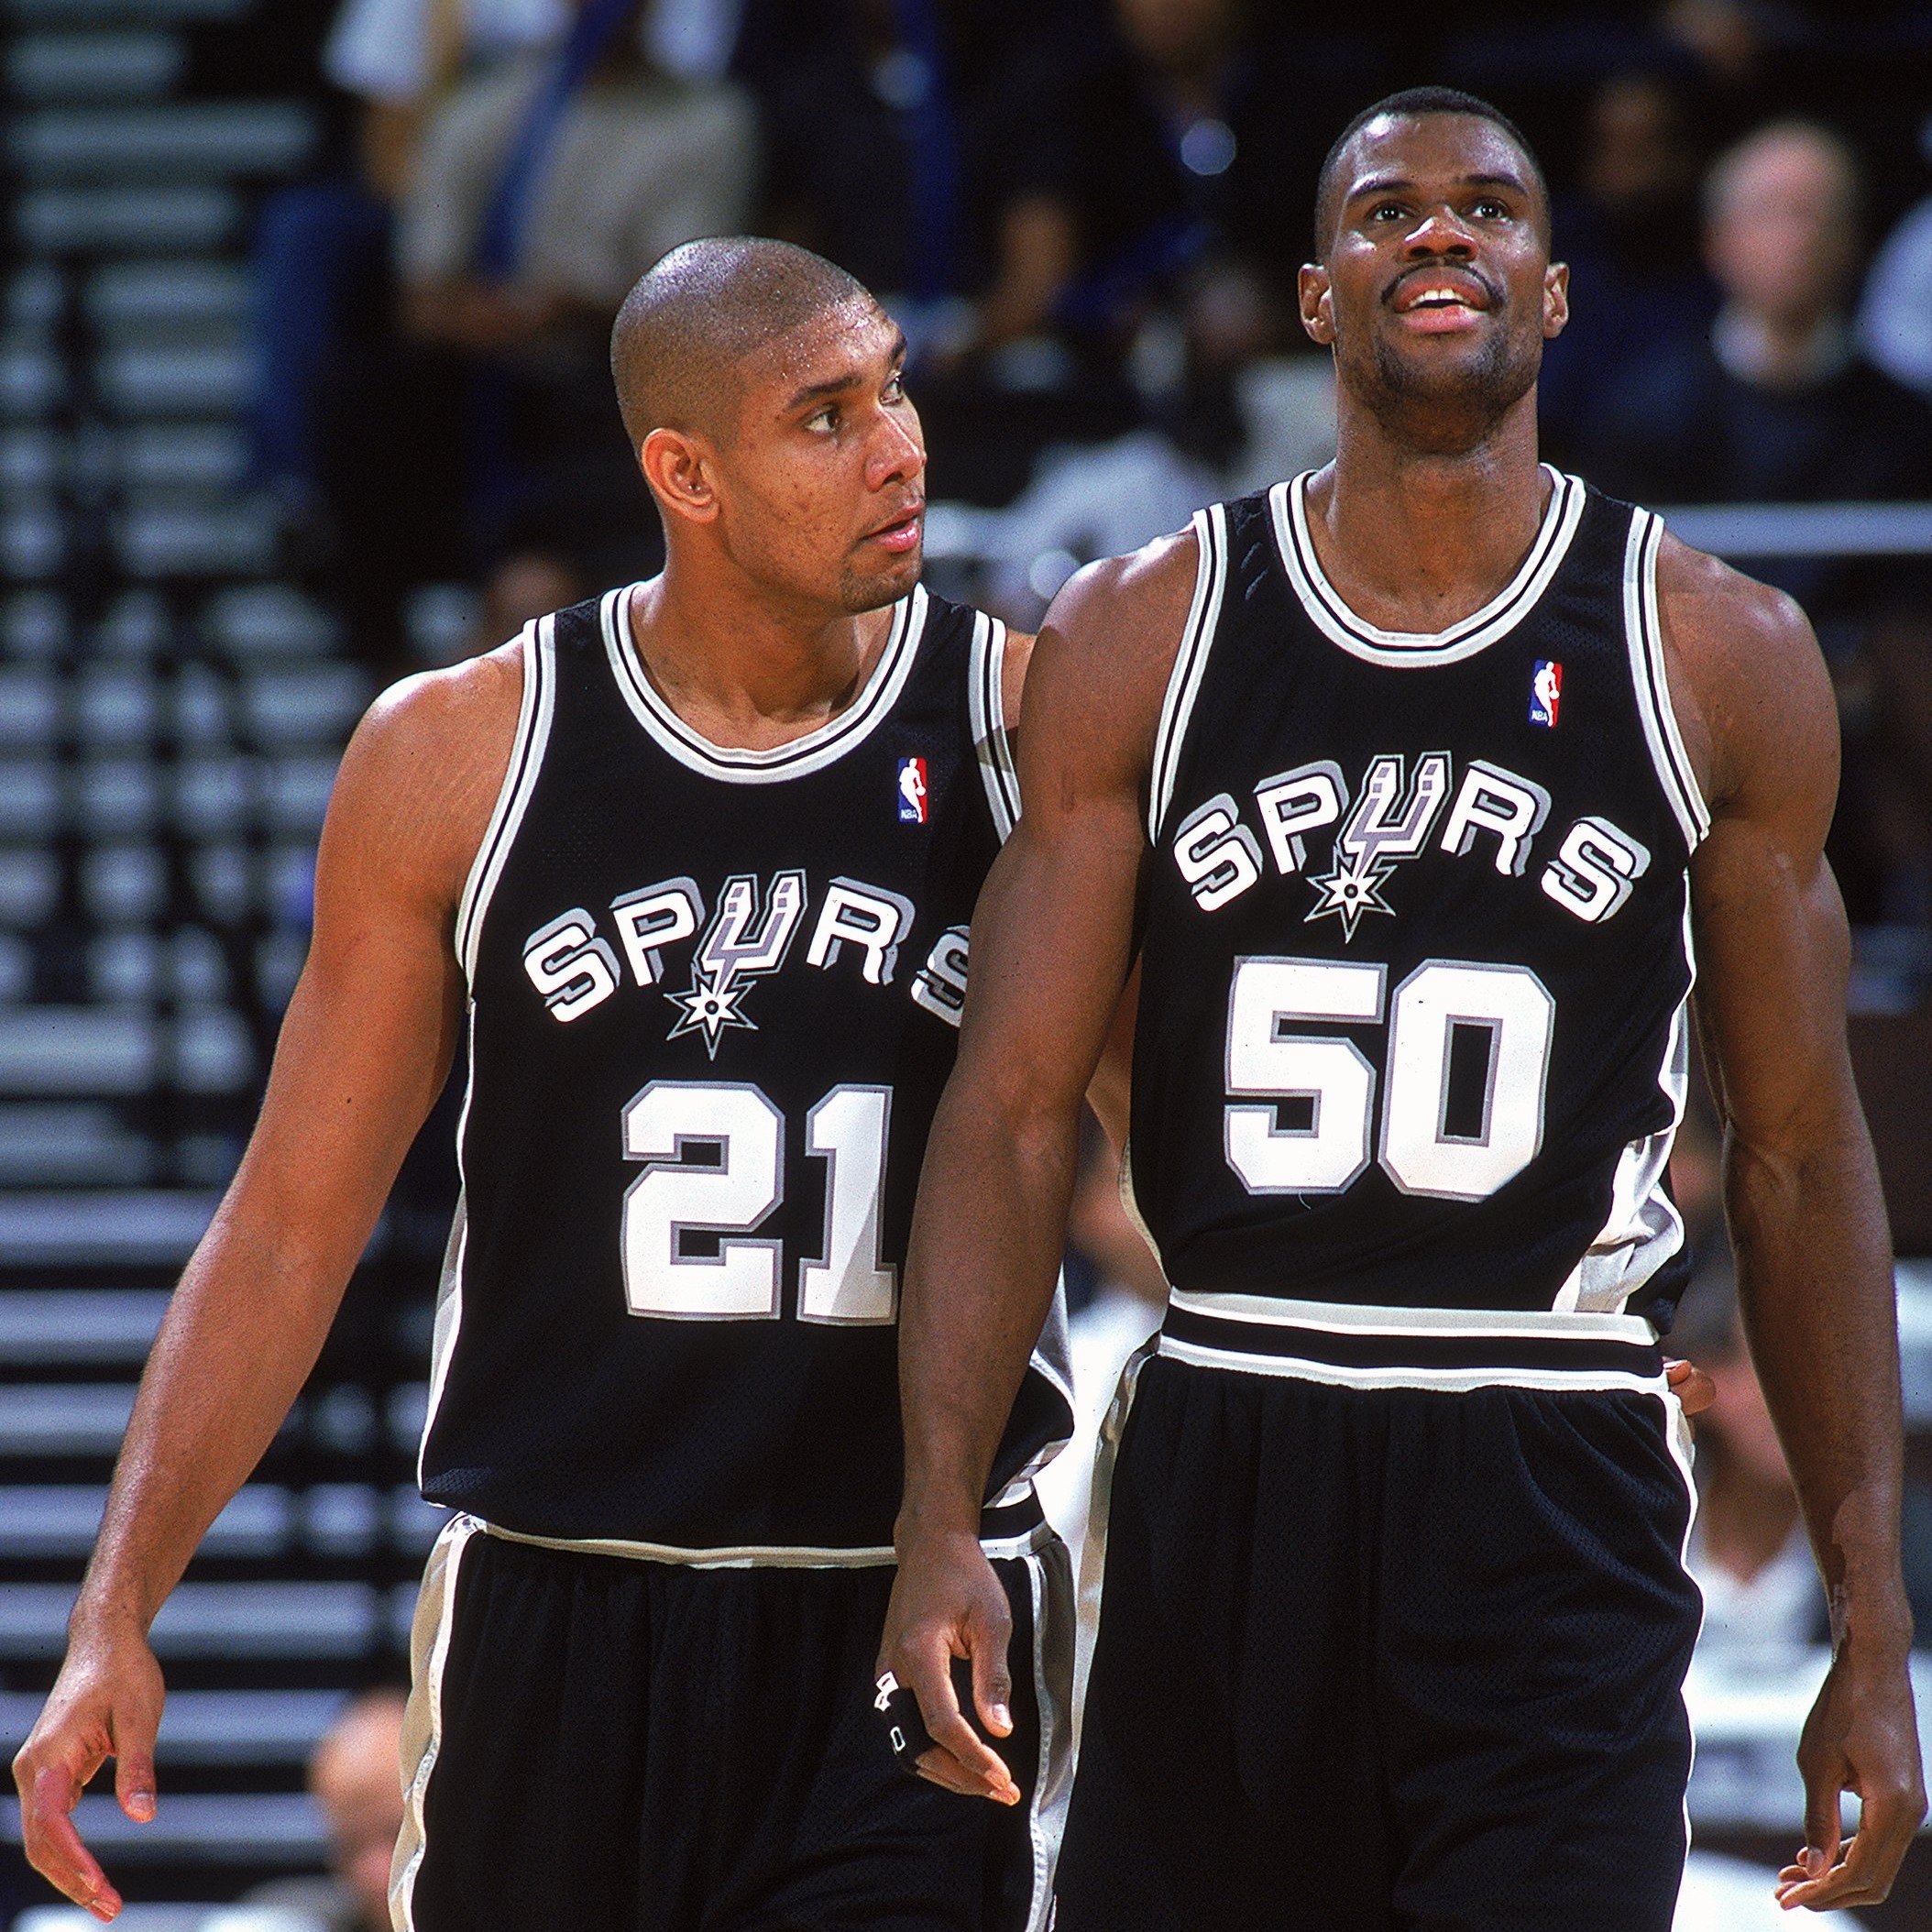 San Antonio Spurs David Robinson #50 Jersey (1990s)